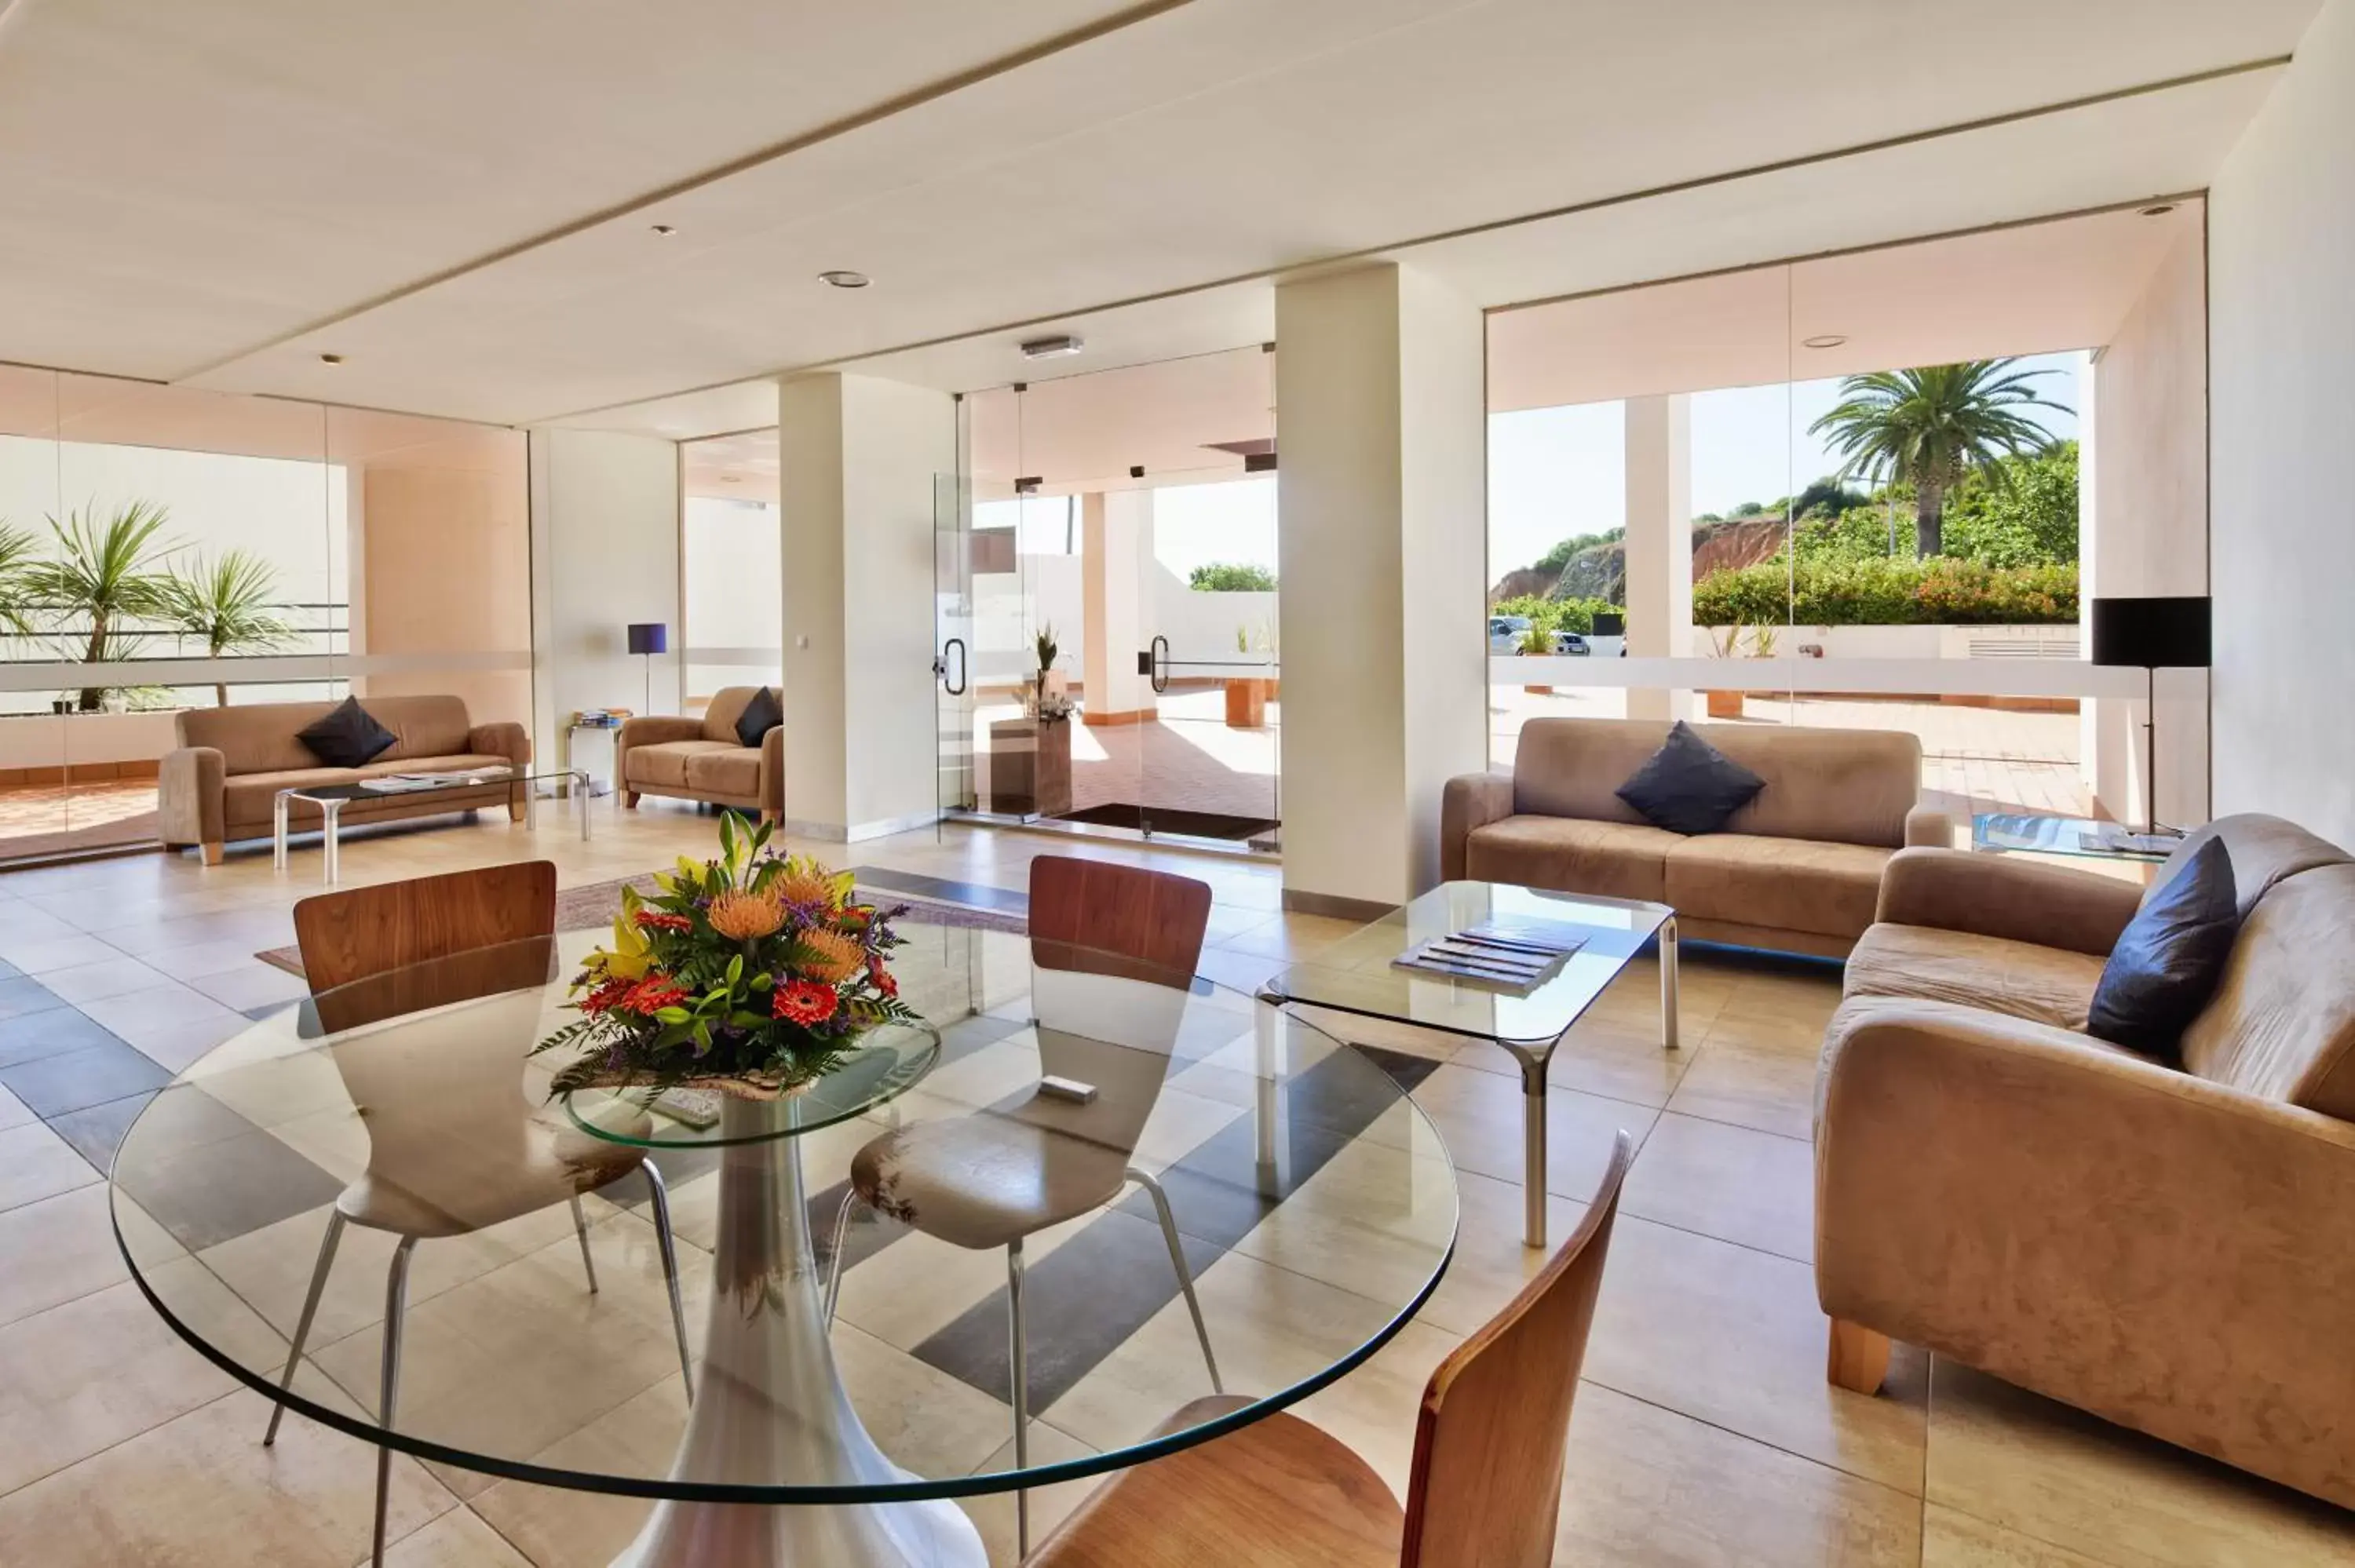 Lobby or reception in Villa Doris Suites